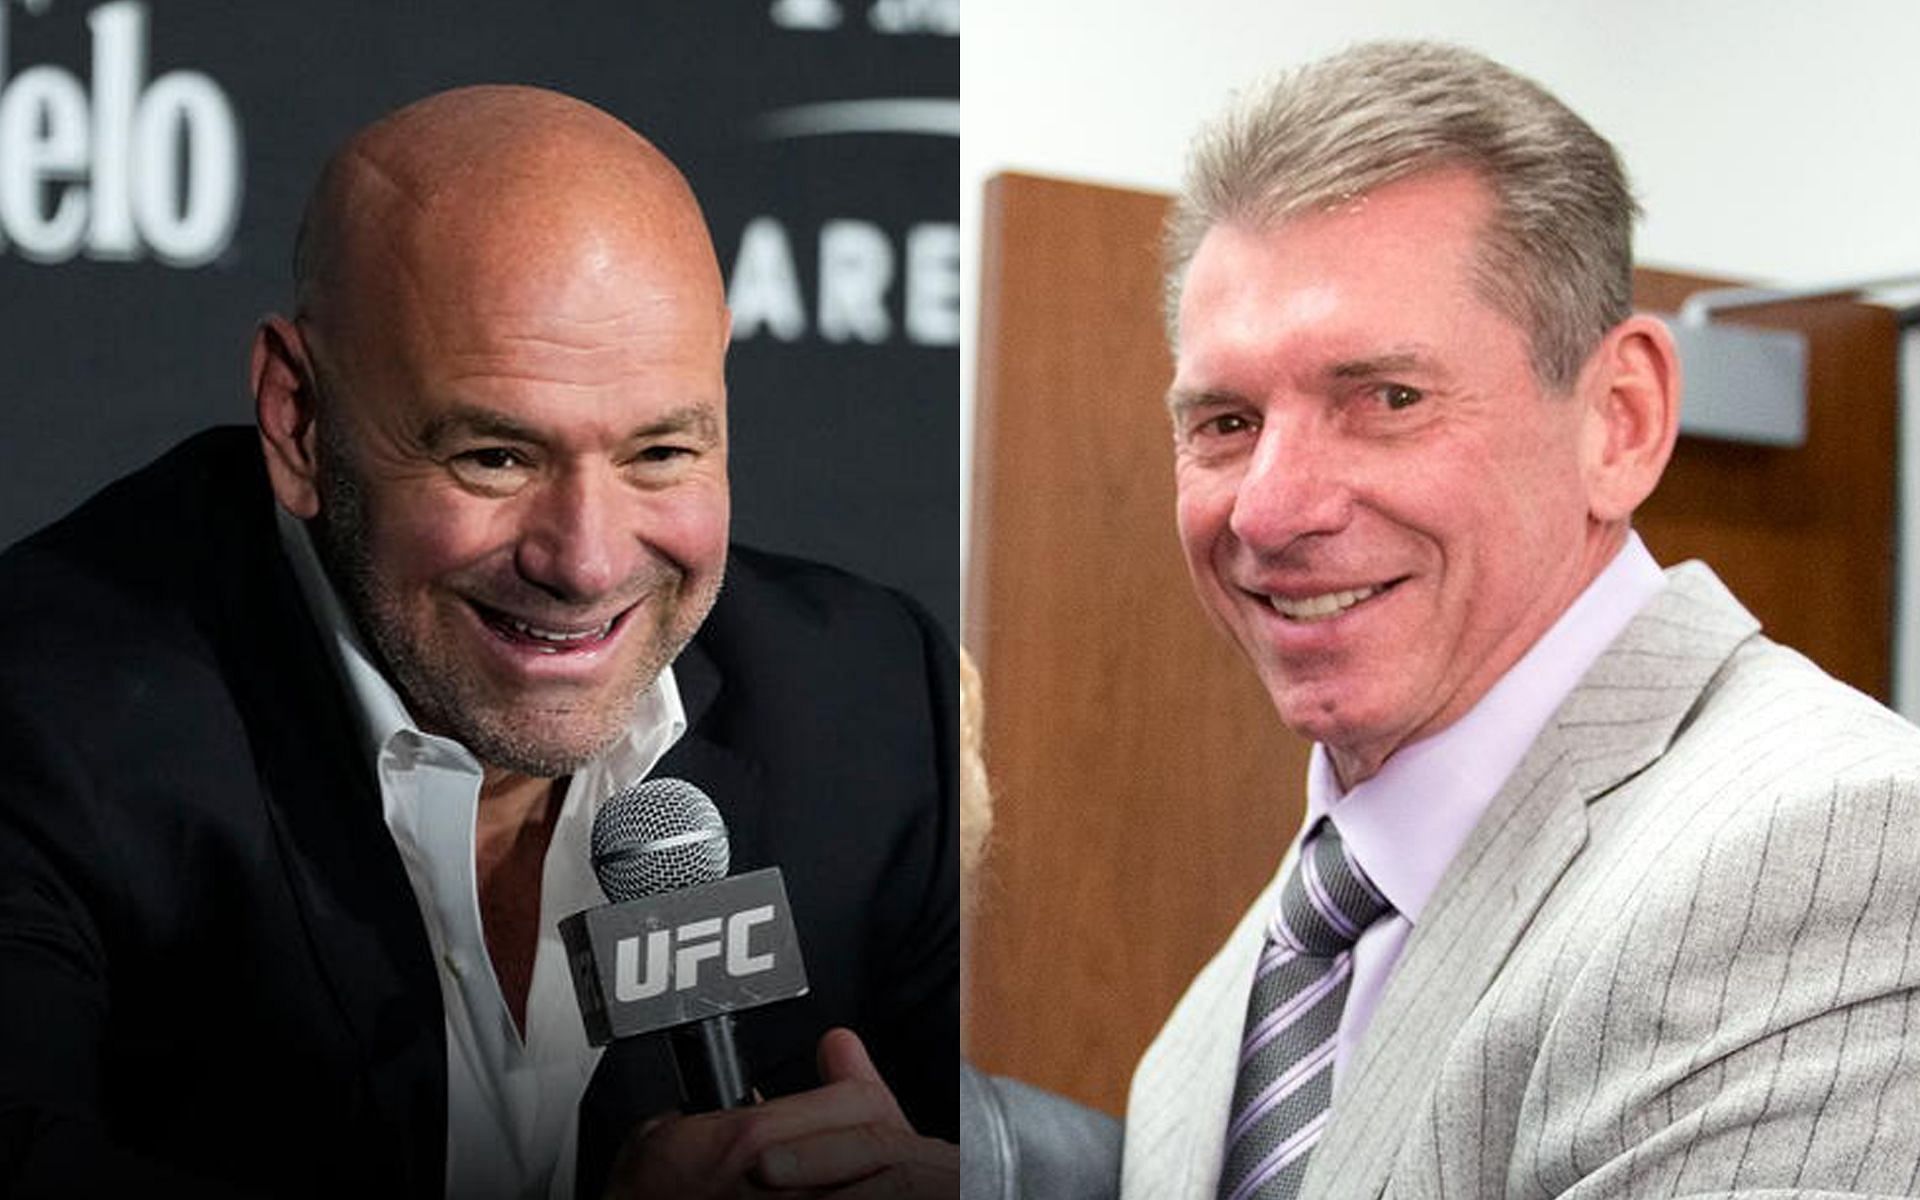 UFC CEO Dana White [L] and TKO Chairman Vince McMahon [R] [Images via ufc.com and @VinceMcMahon Twitter]